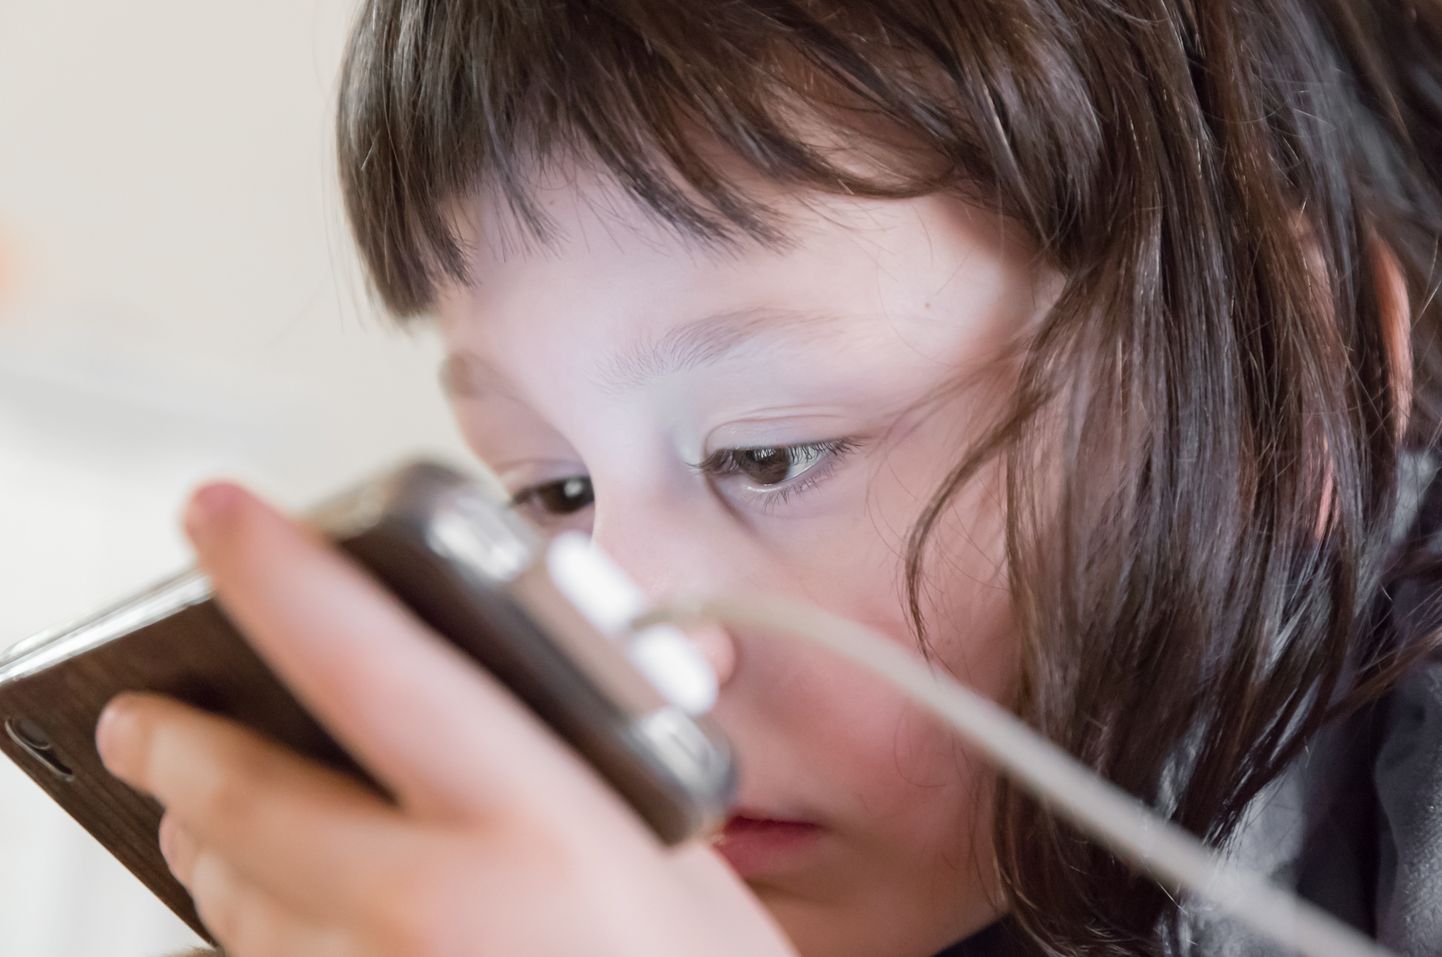 Nägemise defitsiidile võib viidata see, kui laps tahab toimetada nina vastu paberit või telefoni,